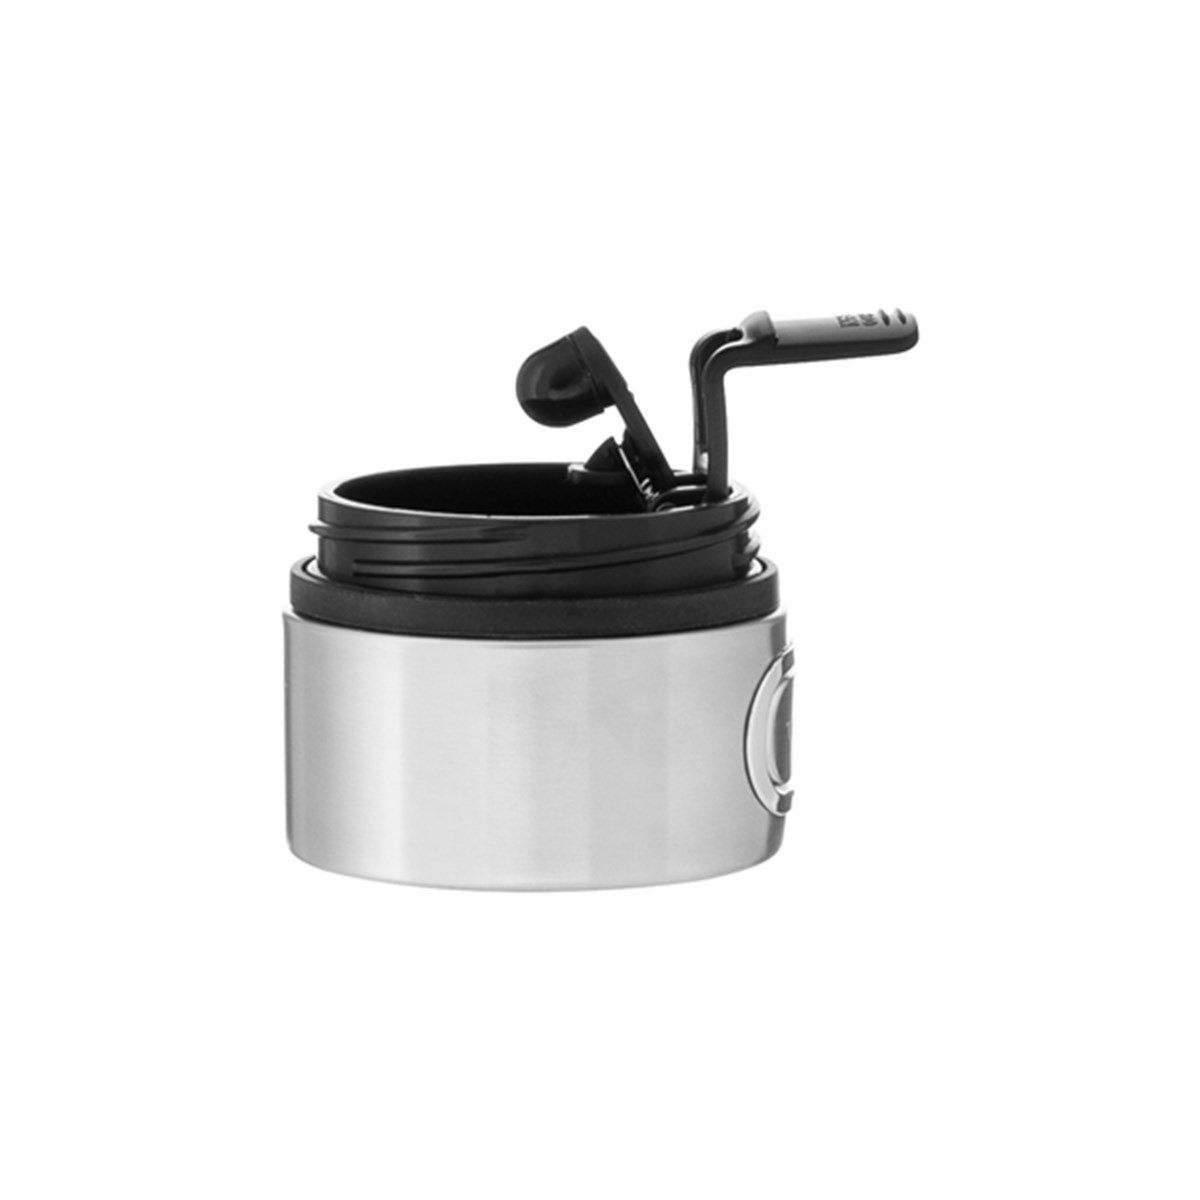 Contigo Thermal Mug Luxe Biscay Bay - Thermal Mug, 360 ml